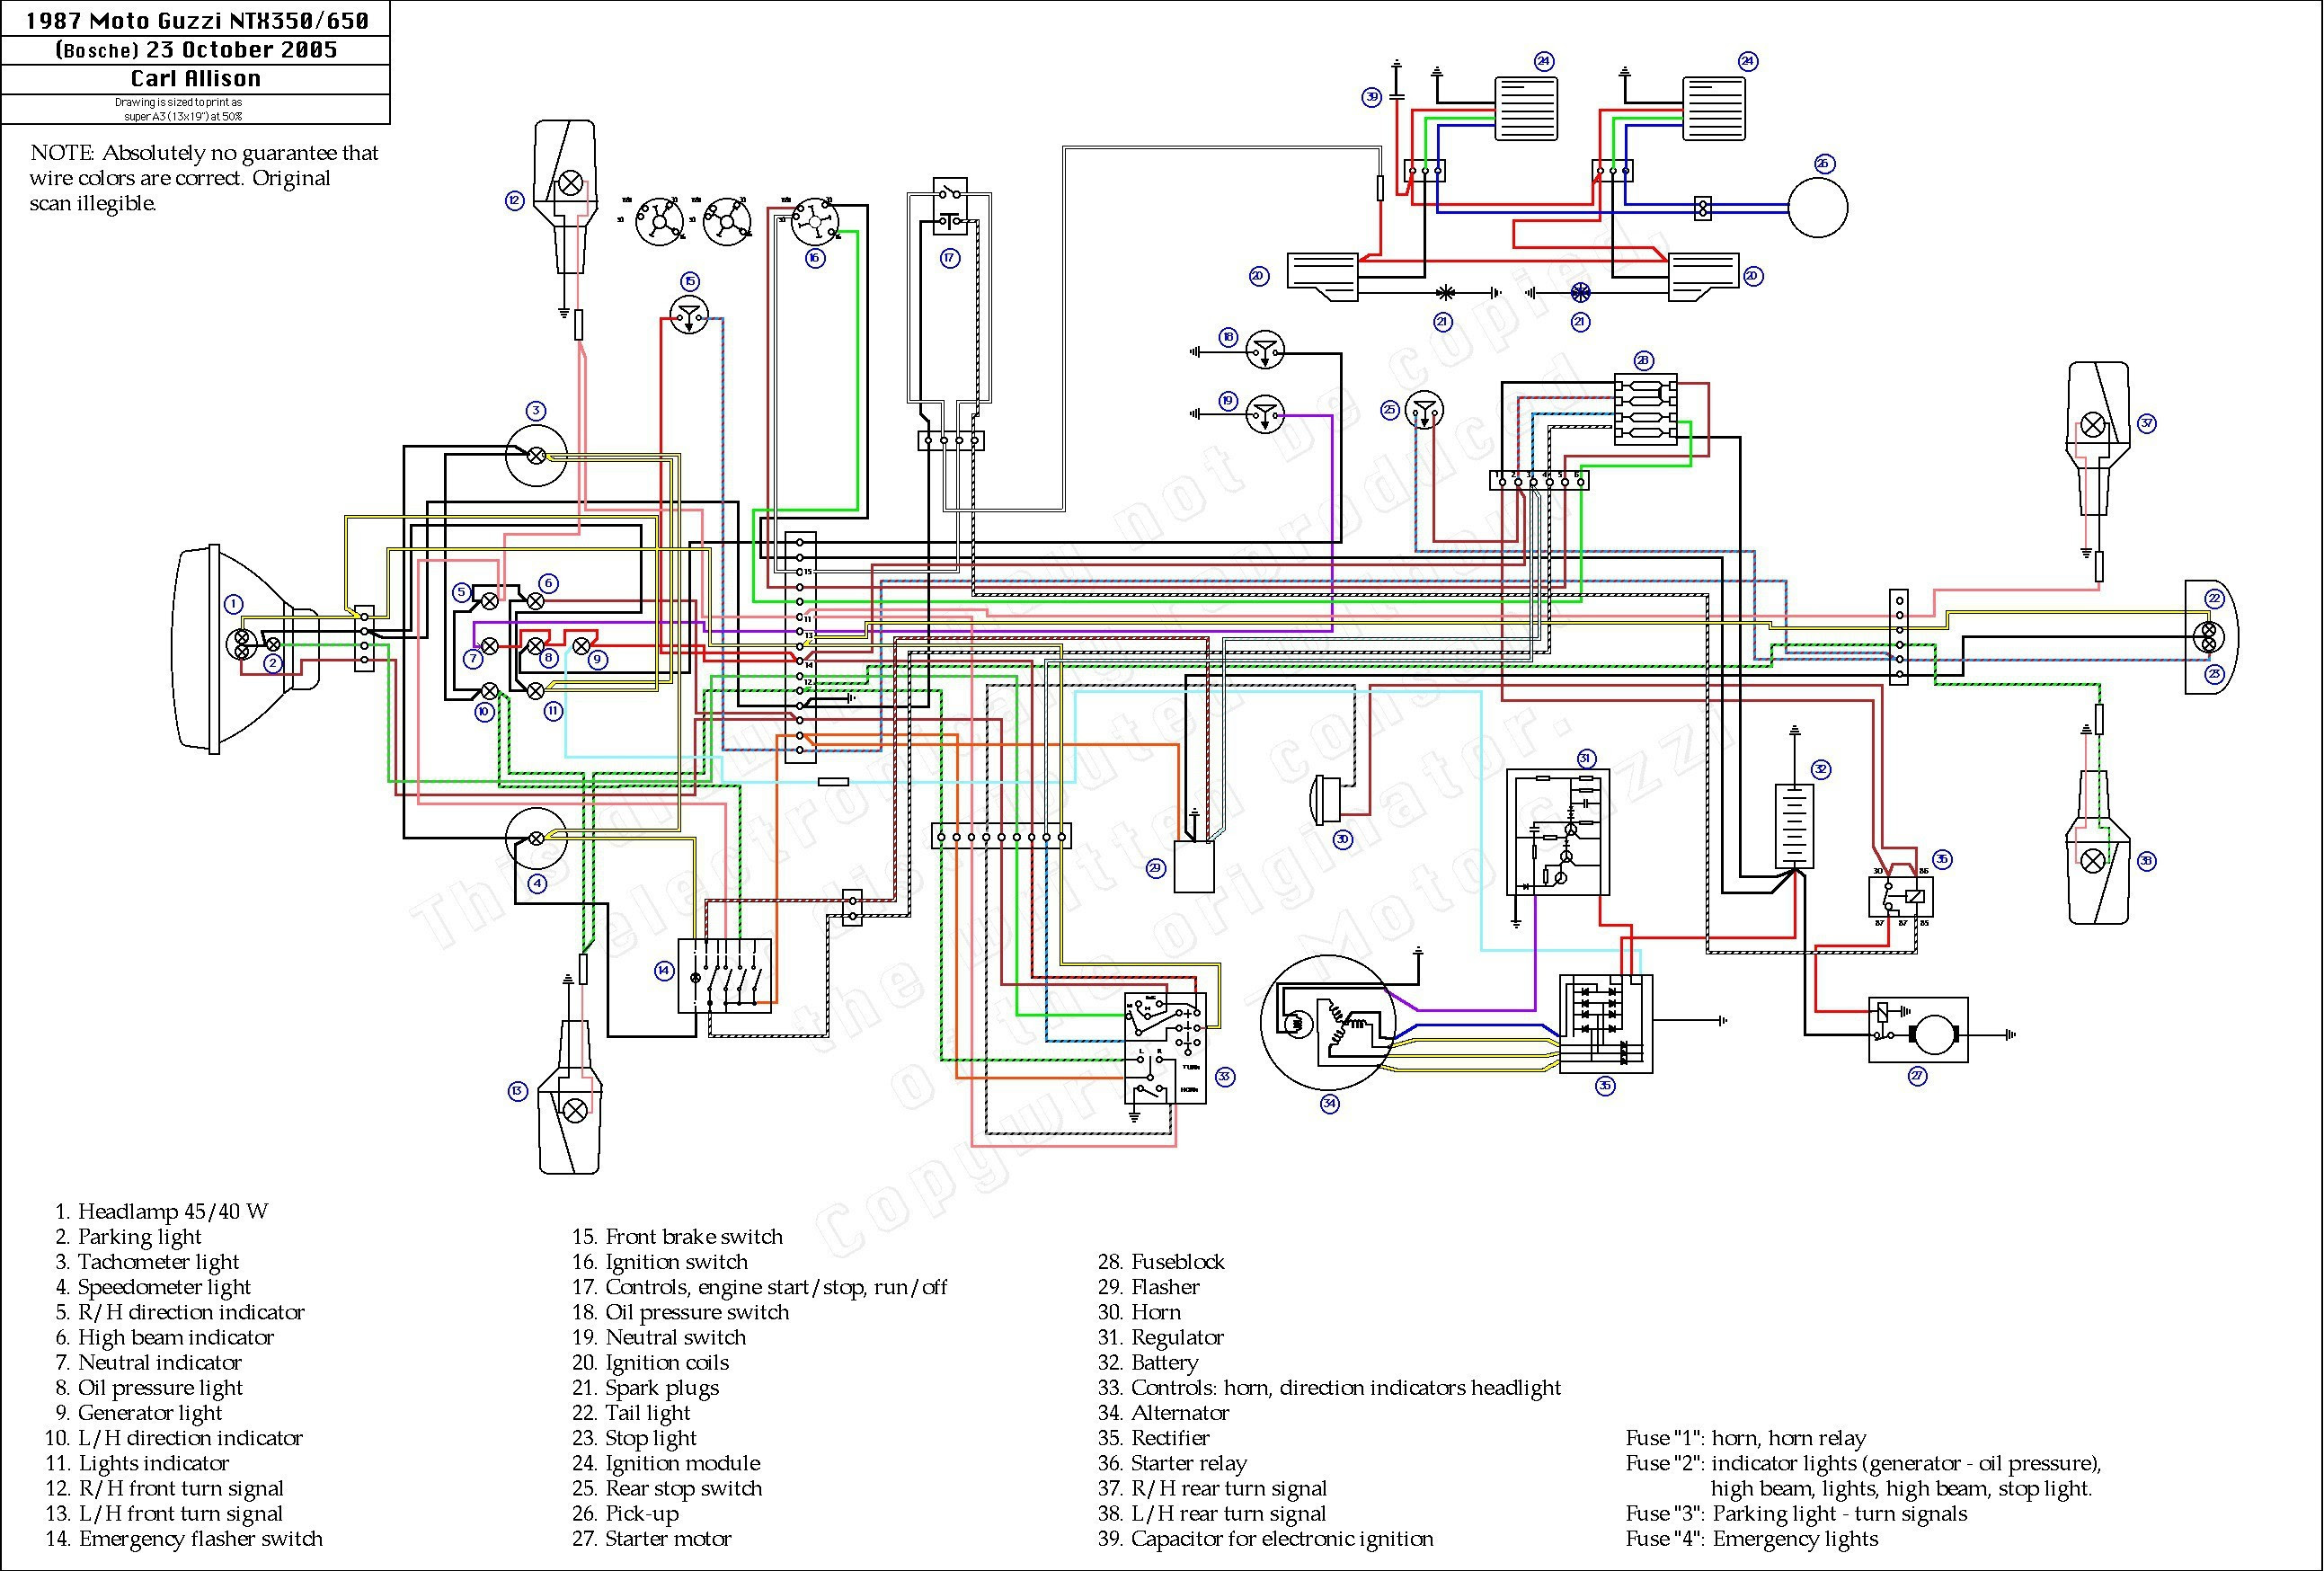 Emergency Flasher Wiring Diagram Gm - Wiring Diagram & Schemas